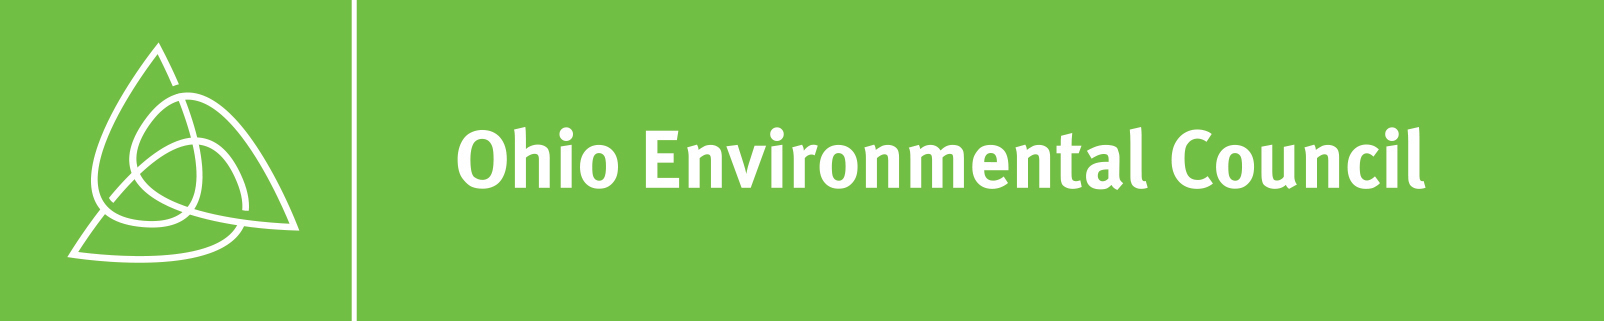 Ohio Environmental Council logo.